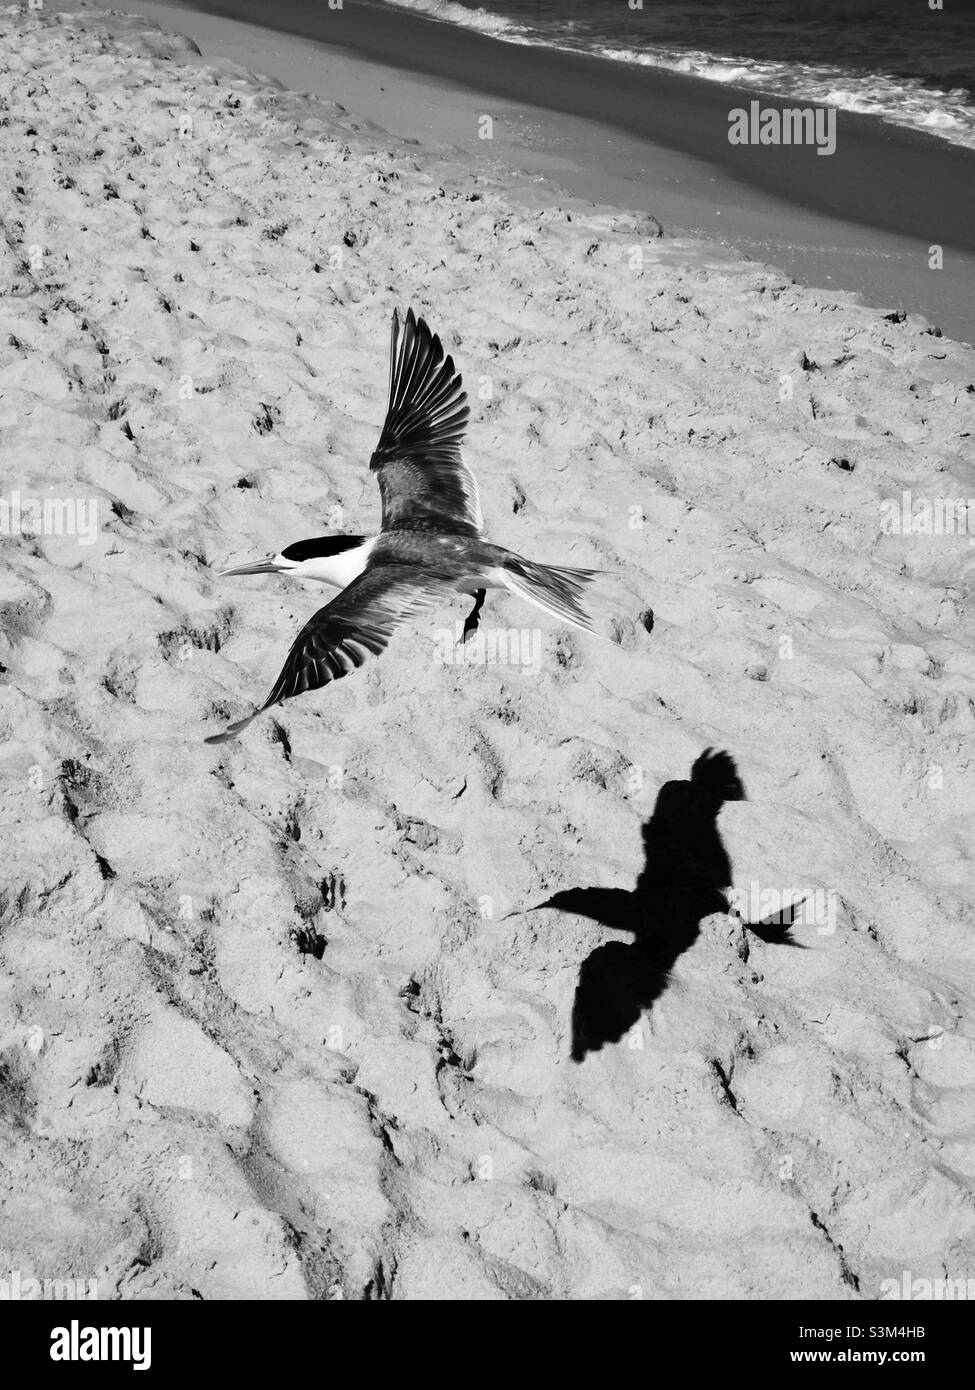 mouette volante sur la plage jetant l'ombre en noir et blanc Banque D'Images